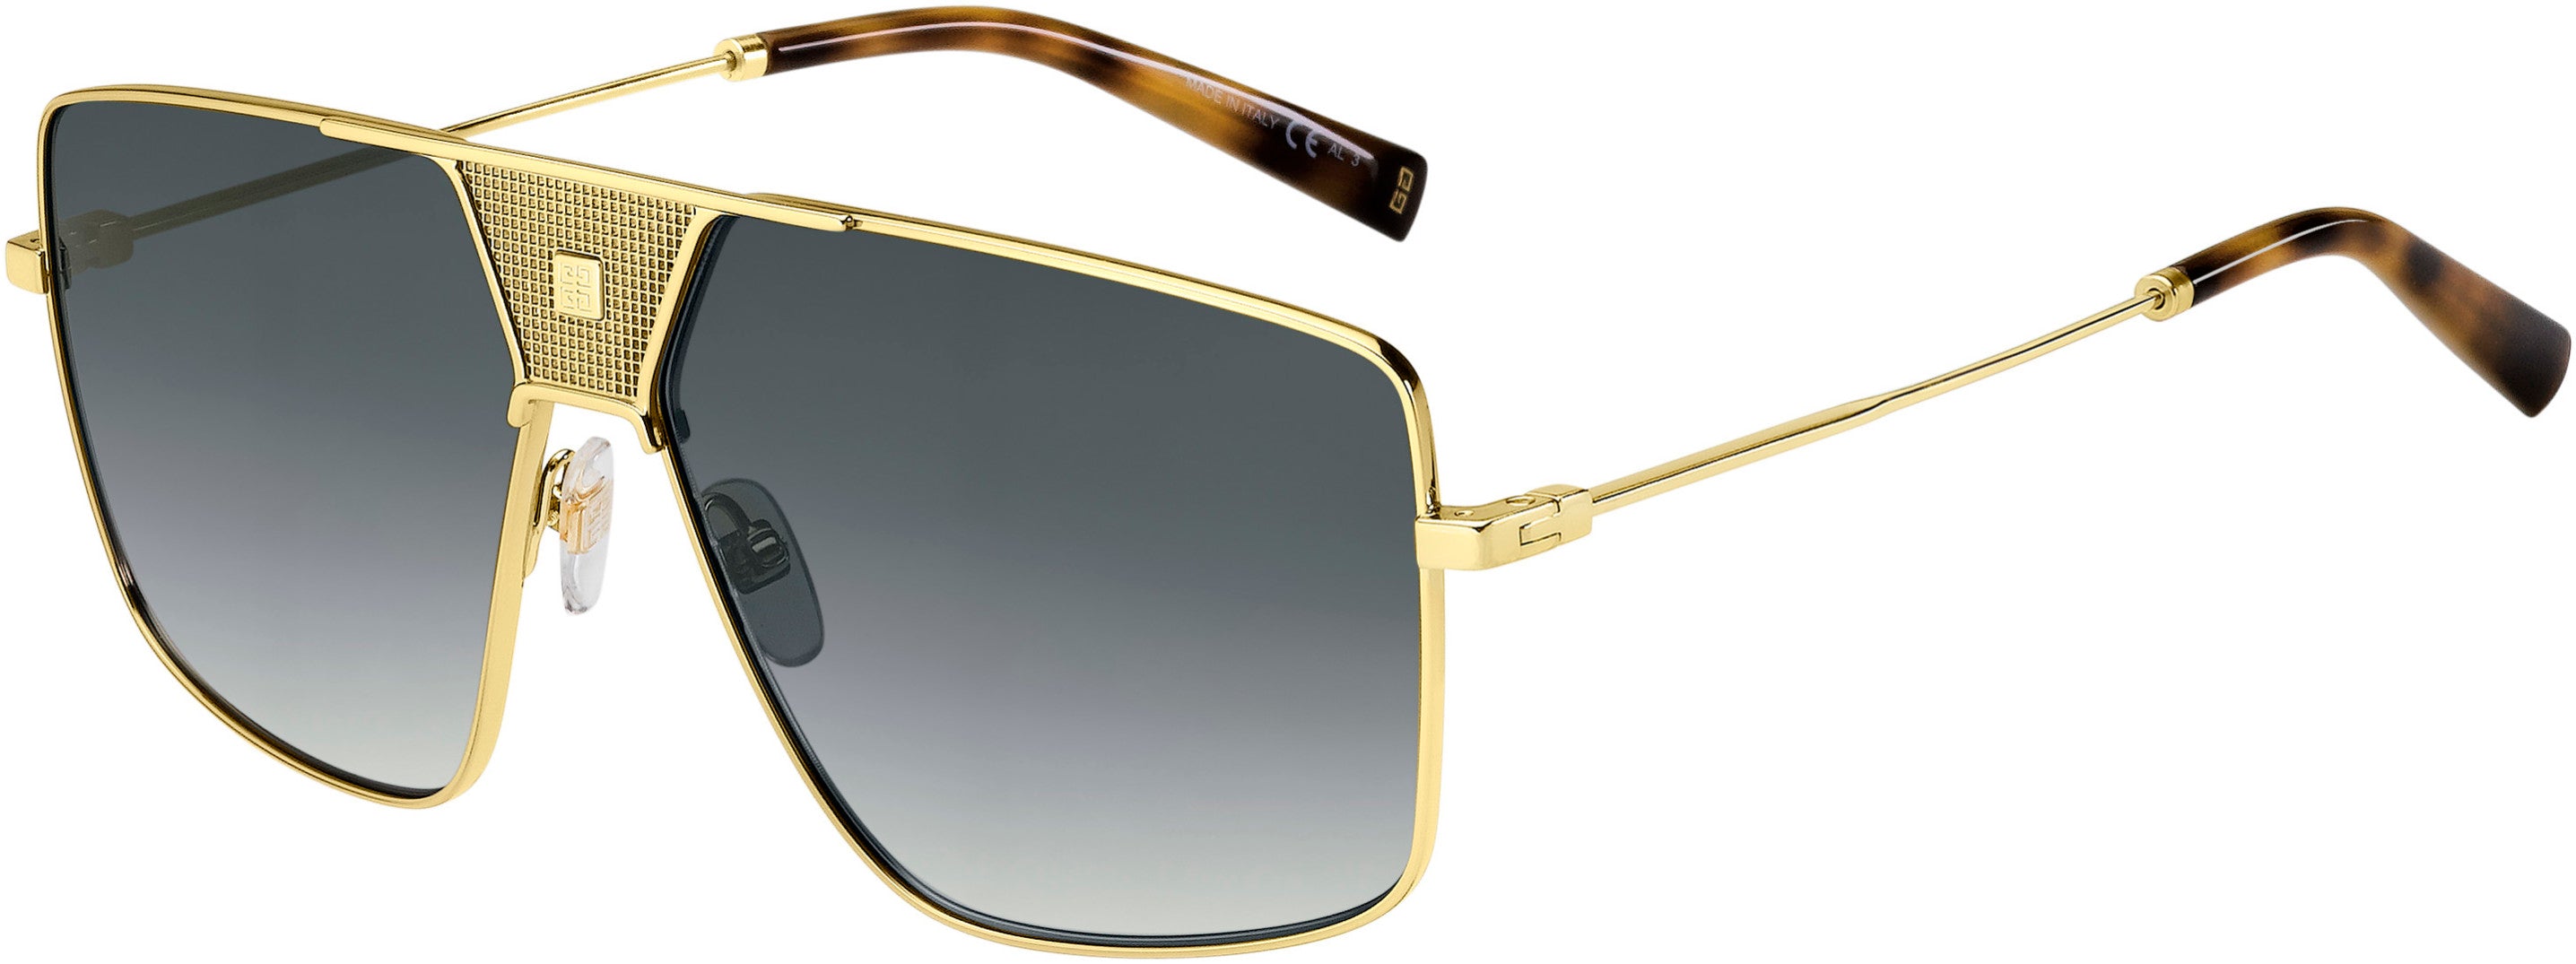  Givenchy 7162/S Square Sunglasses 02F7-02F7  Gold Gray (9O Dark Gray Gradient)